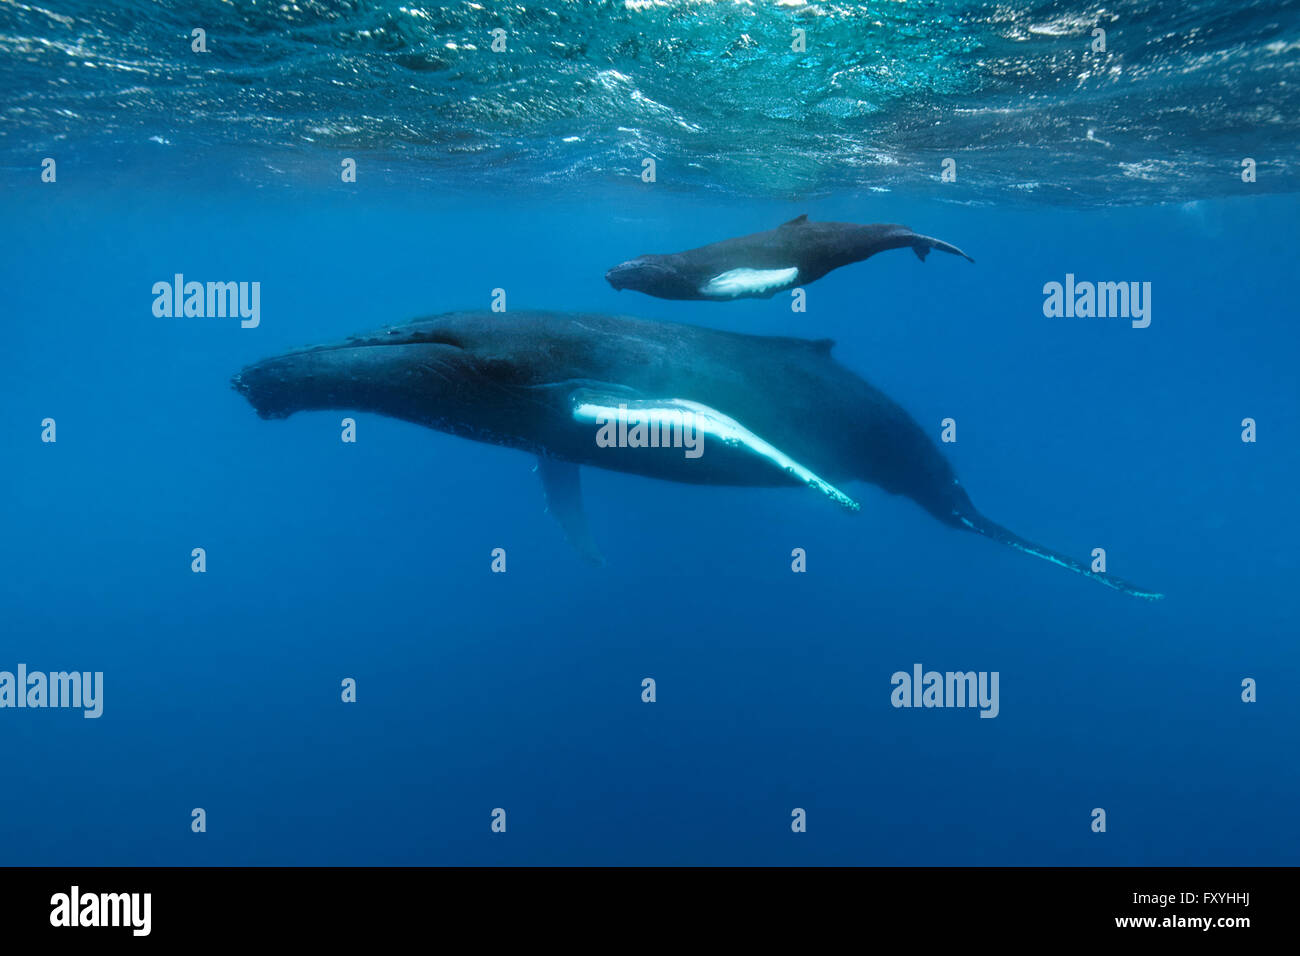 La ballena jorobada (Megaptera novaeangliae), hembra, de vaca, con jóvenes, la pantorrilla, nadar en el océano abierto, Océano Atlántico, Banco de Plata Foto de stock